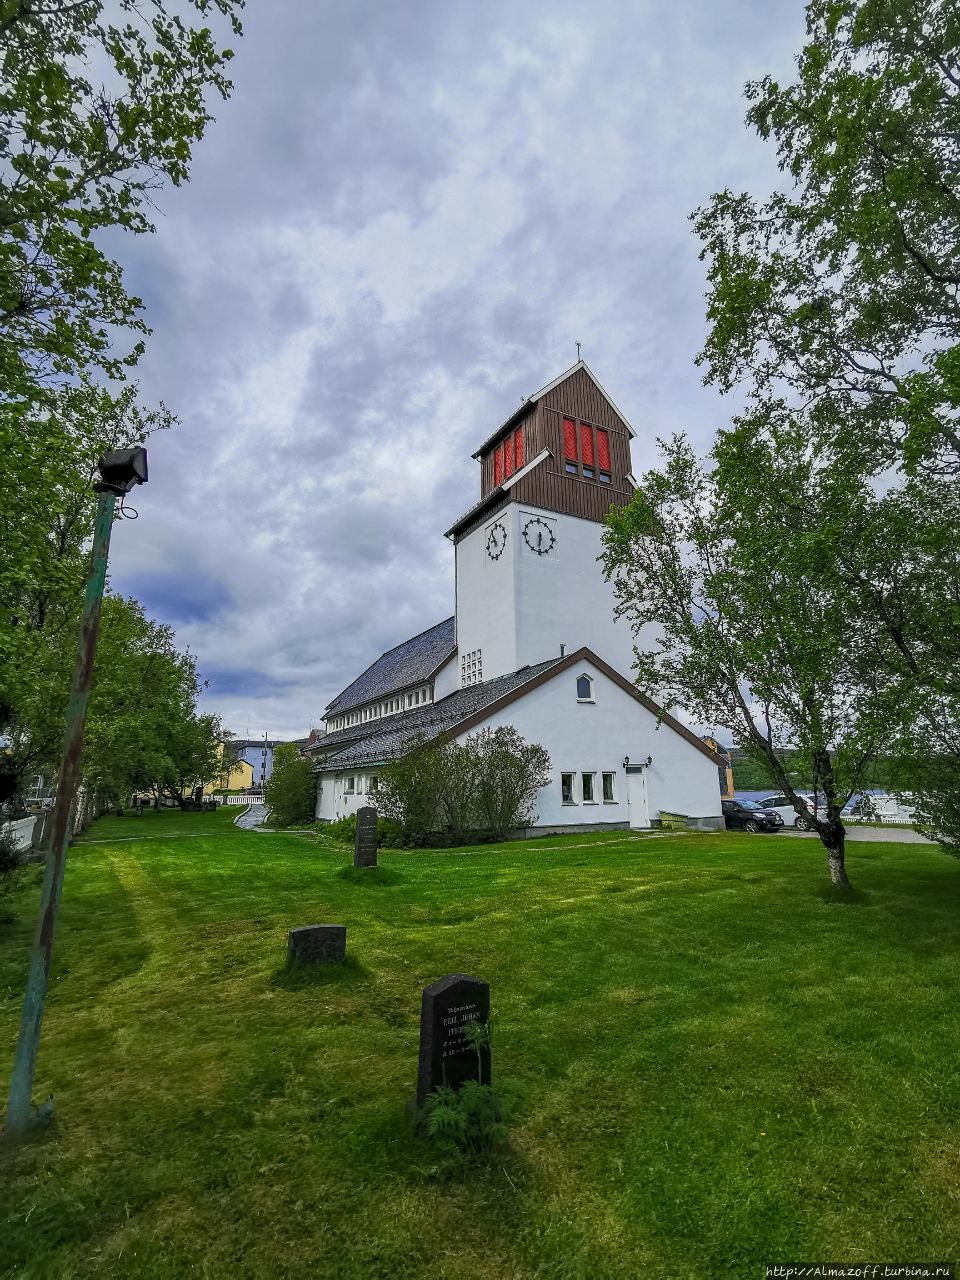 Киркенесская церковь (кирха) Киркенес, Норвегия